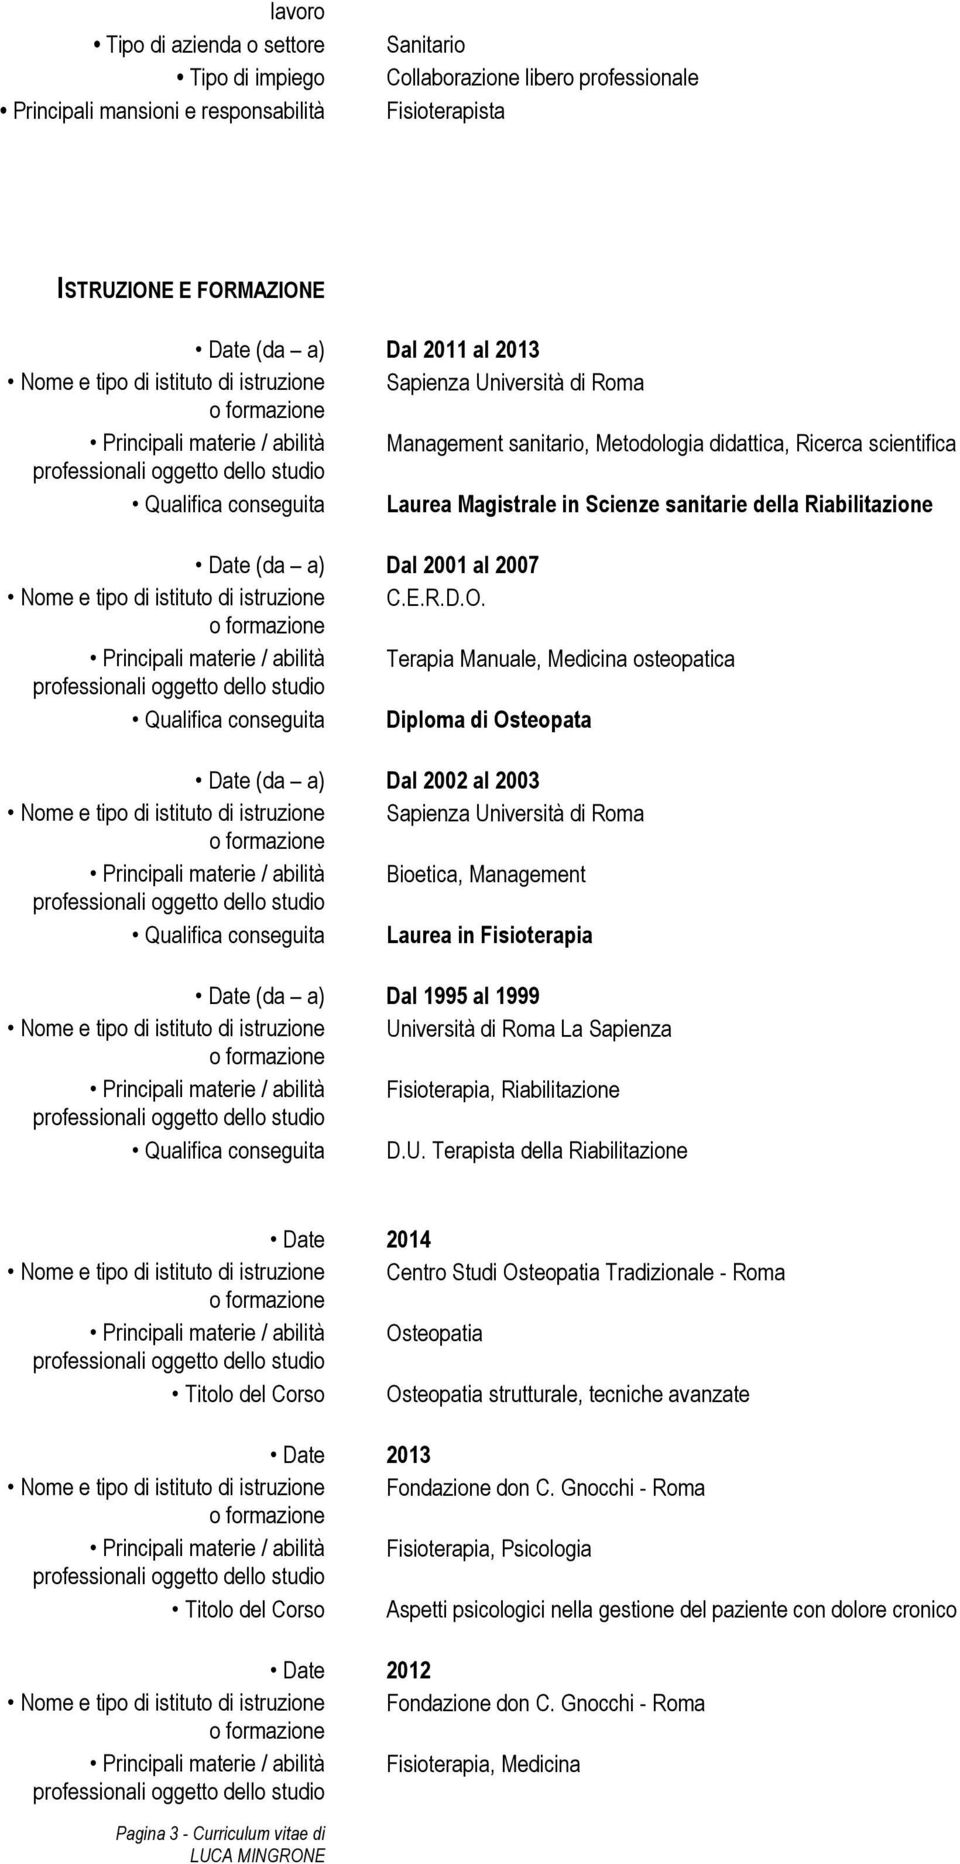 Principali materie / abilità Terapia Manuale, Medicina osteopatica Qualifica conseguita Diploma di Osteopata Dal 2002 al 2003 Nome e tipo di istituto di istruzione Sapienza Università di Roma